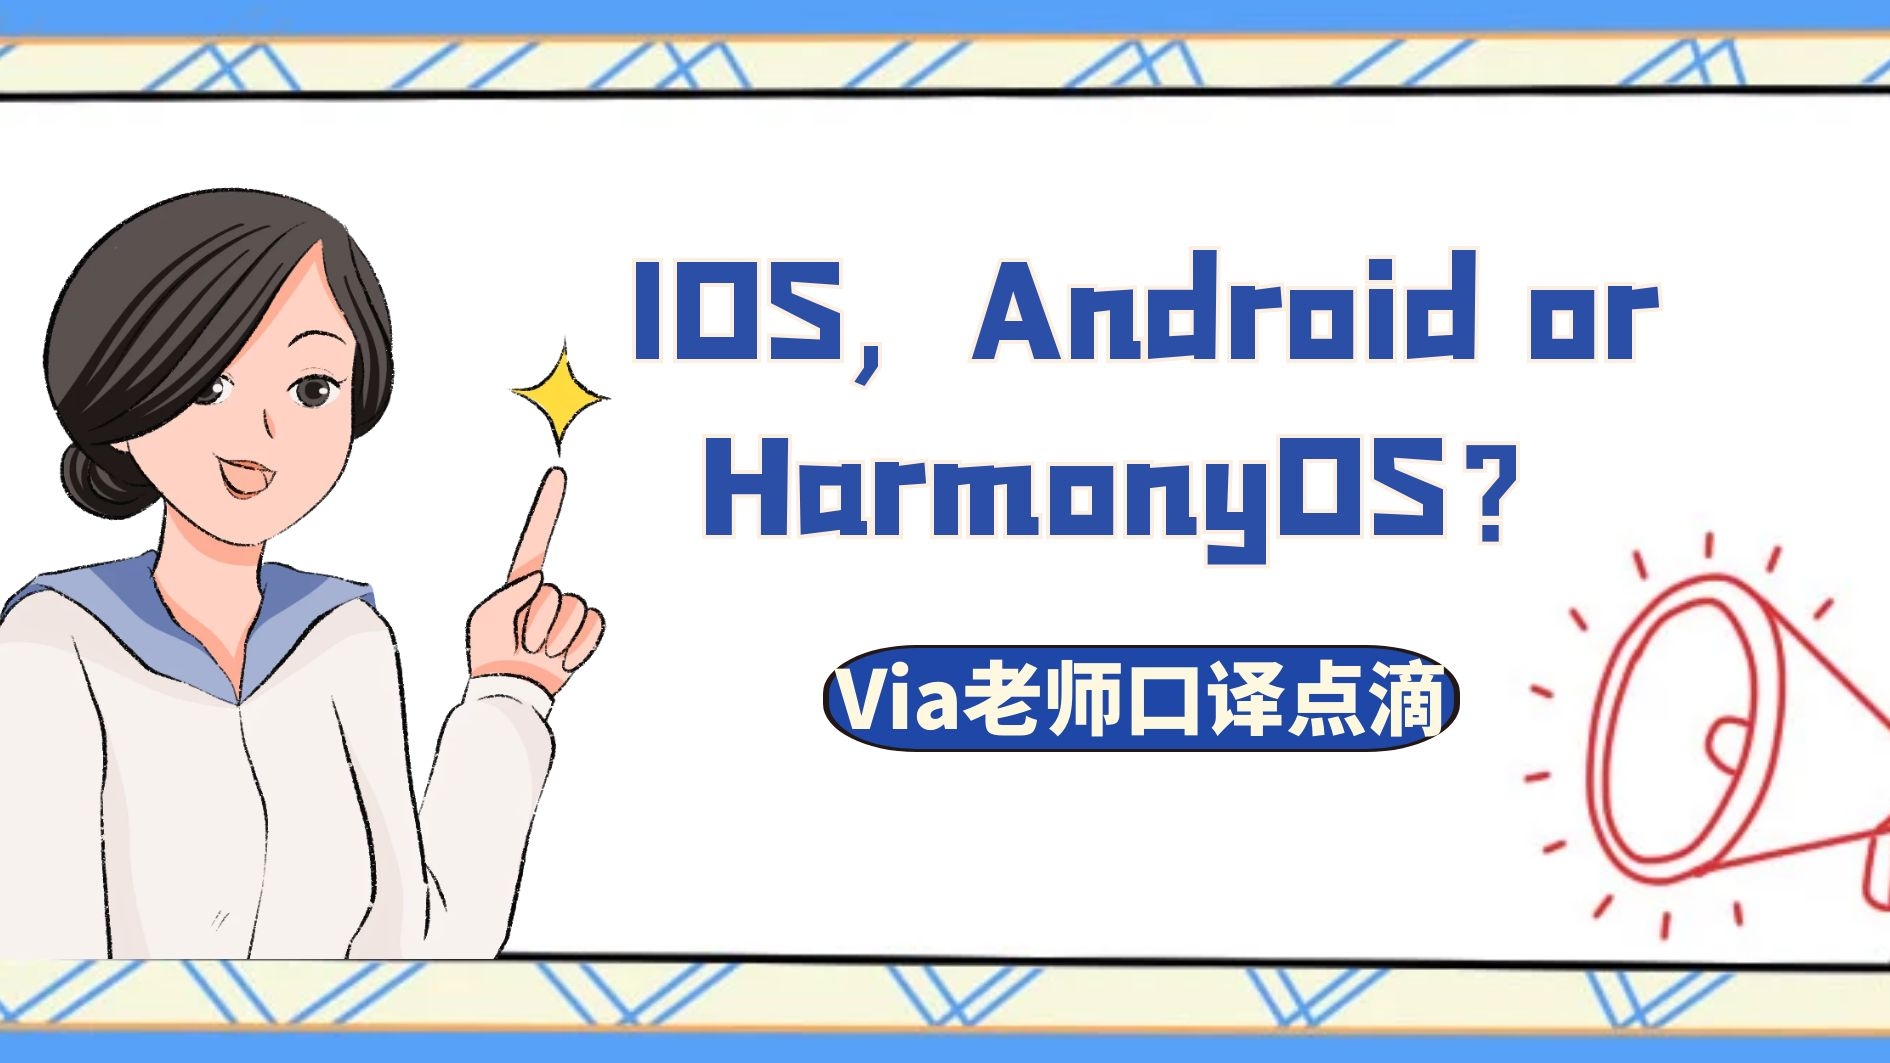 【第七十二期】IOS, Android or HarmonyOS？| Via老师的口译点滴